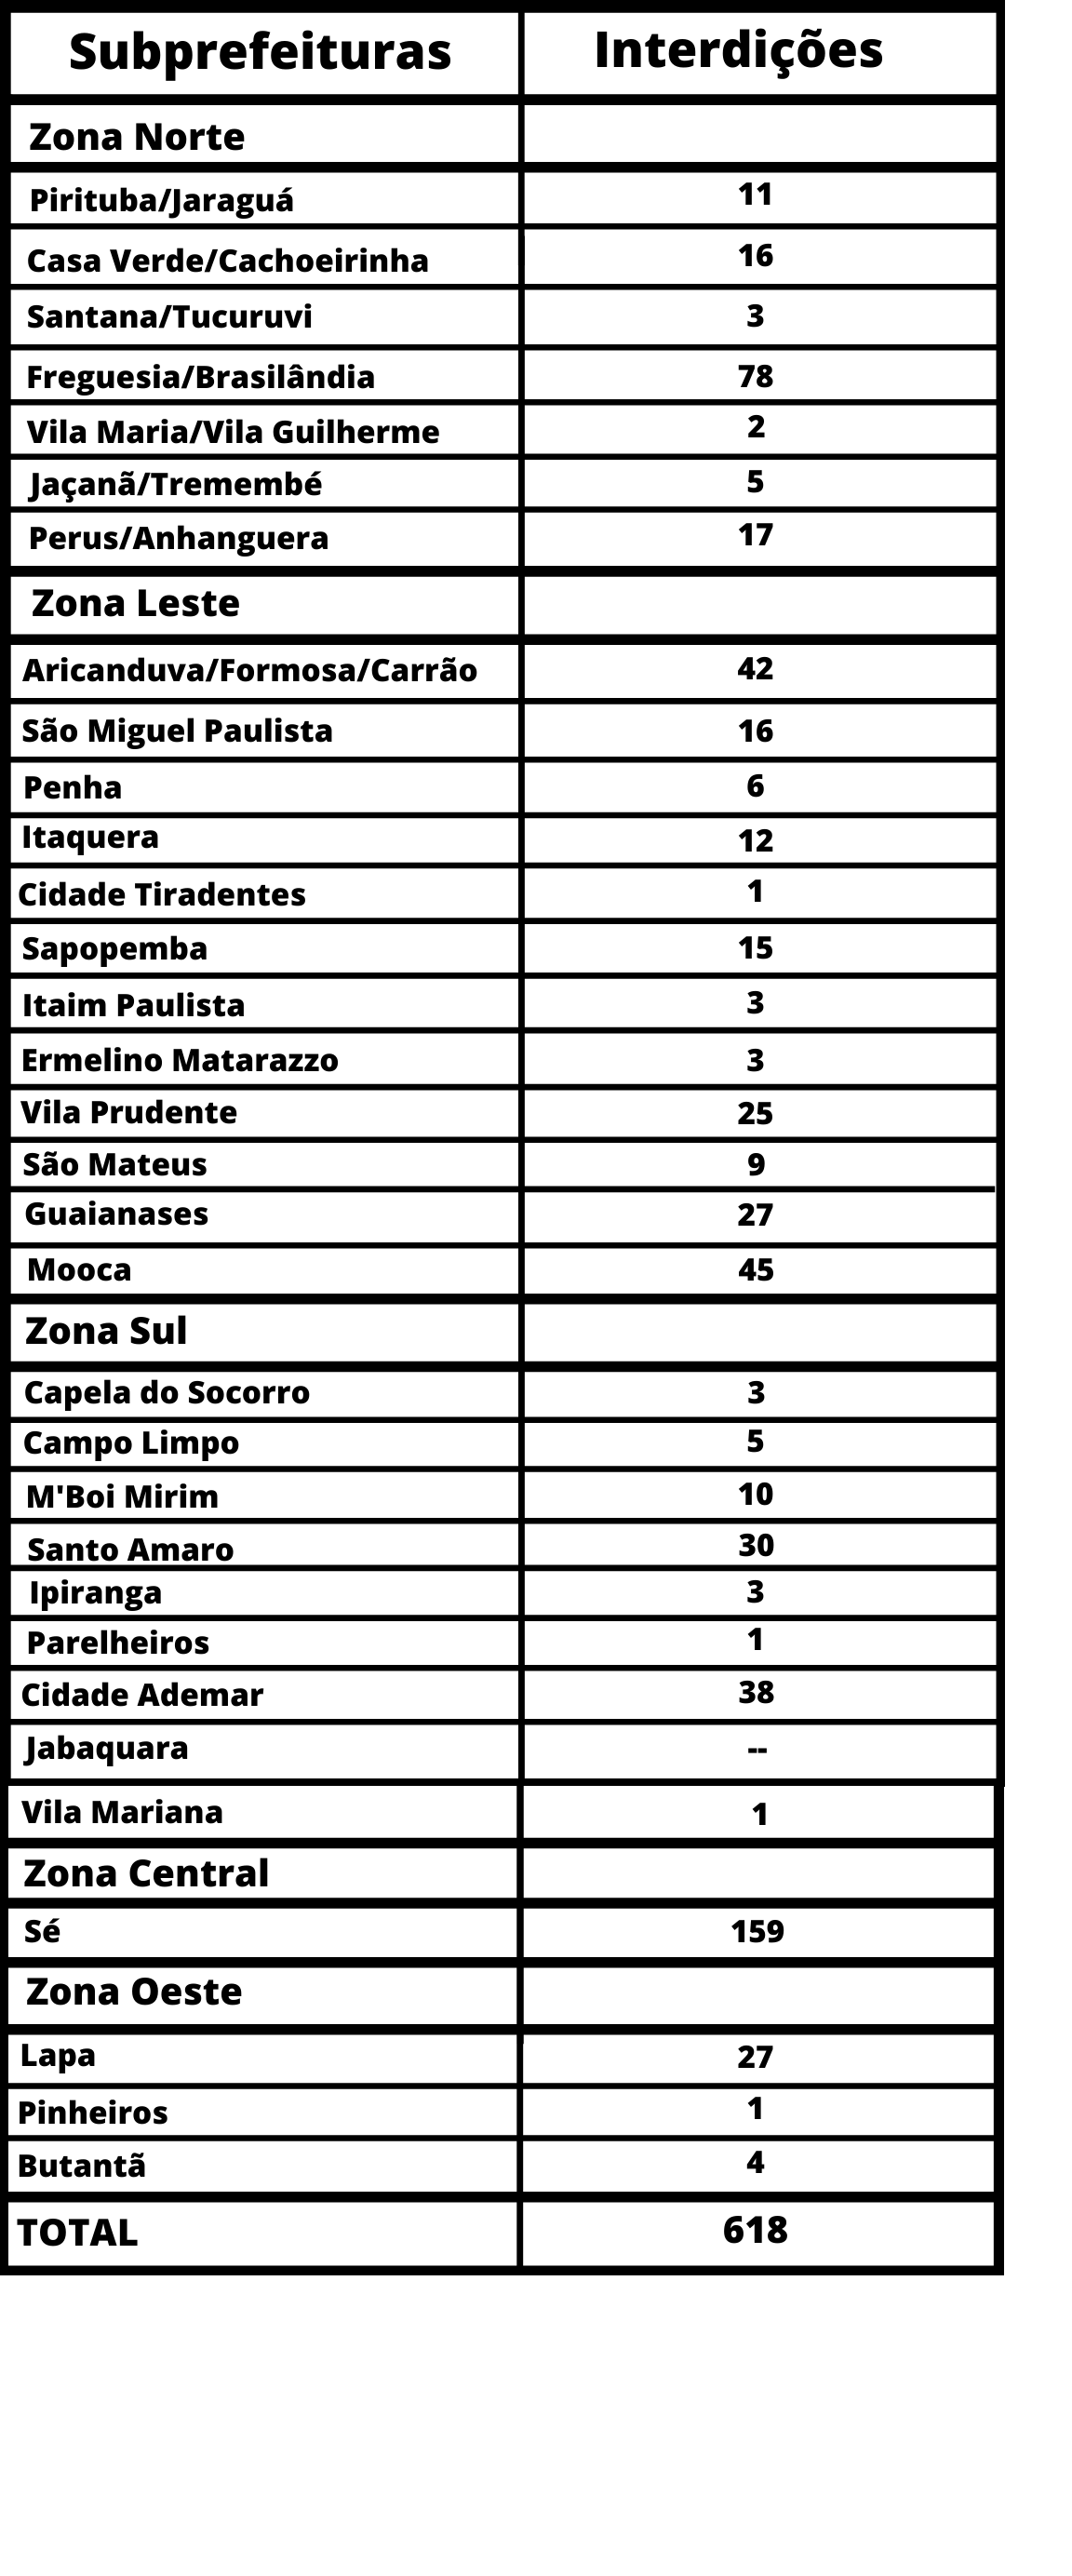 Tabela com os nomes das Subprefeituras e números de interdições